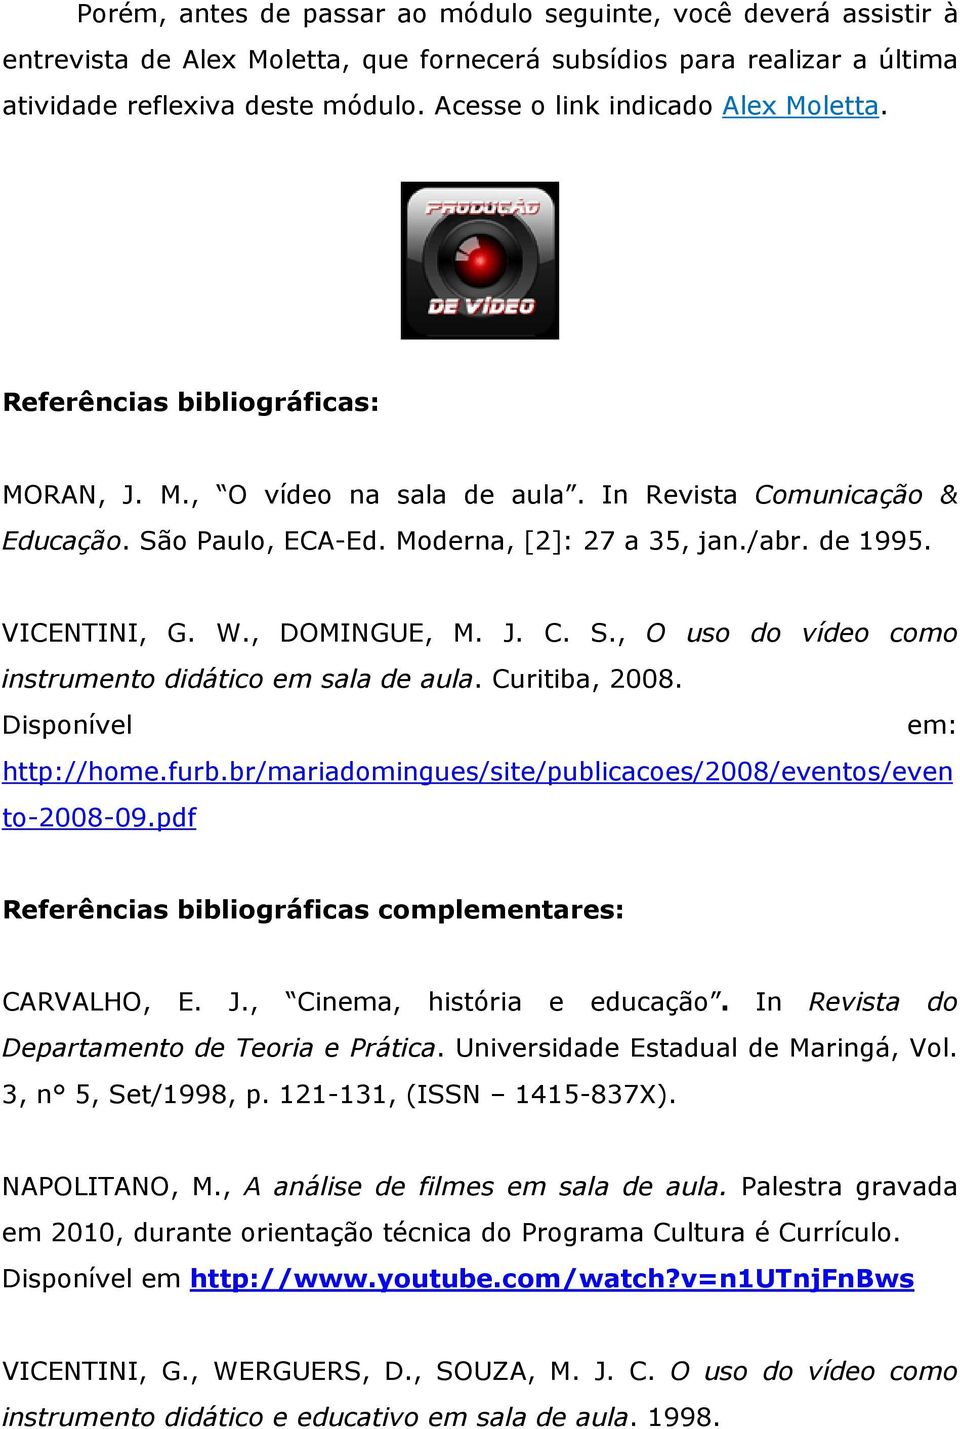 VICENTINI, G. W., DOMINGUE, M. J. C. S., O uso do vídeo como instrumento didático em sala de aula. Curitiba, 2008. Disponível em: http://home.furb.